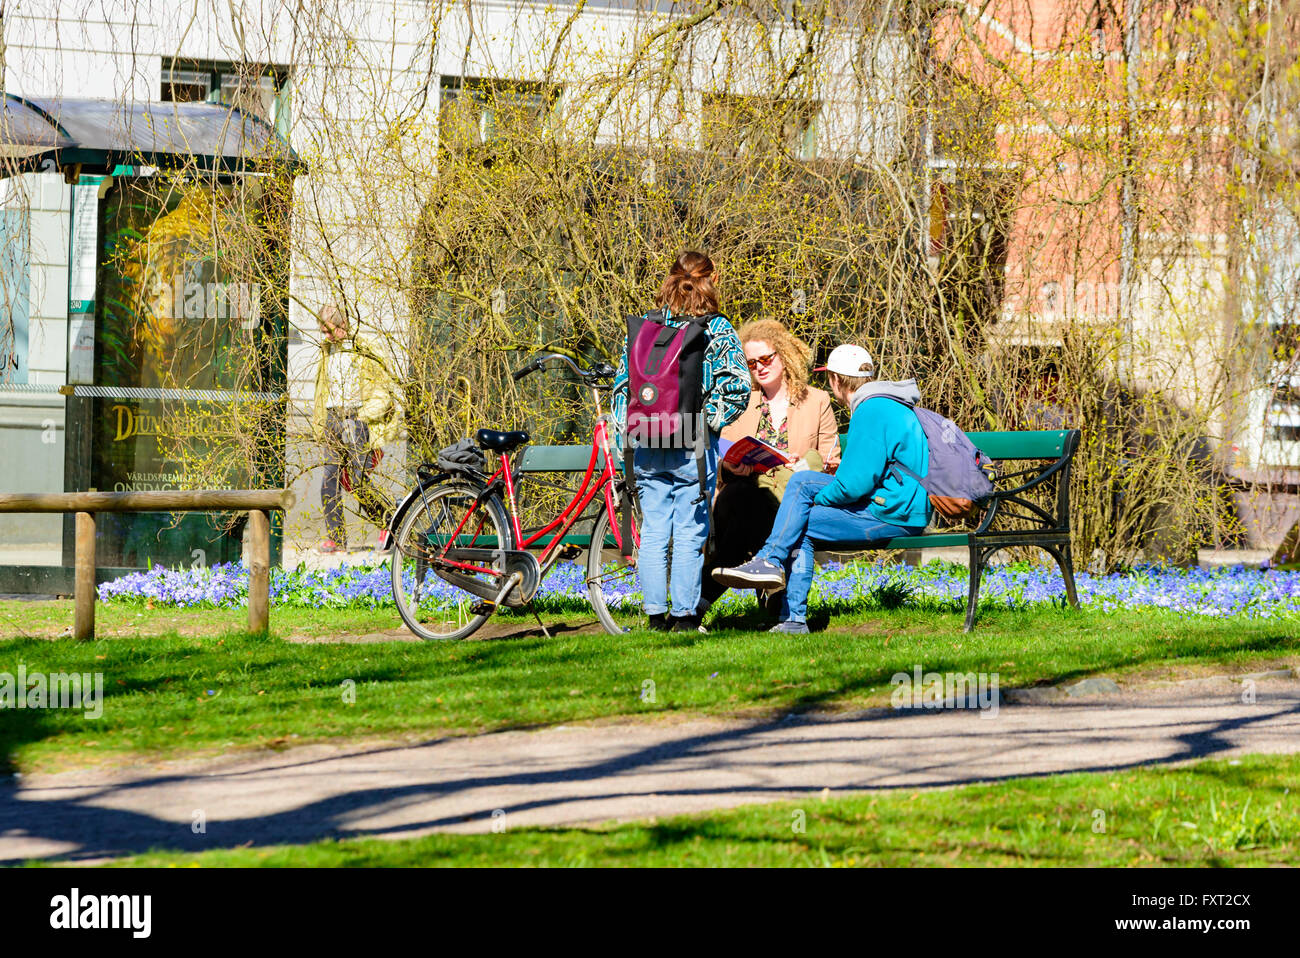 Lund, Schweden - 11. April 2016: Alltag in der Stadt. Junge Leute reden und diskutieren auf einer Bank in einem der Parks in der Stadt. Stockfoto